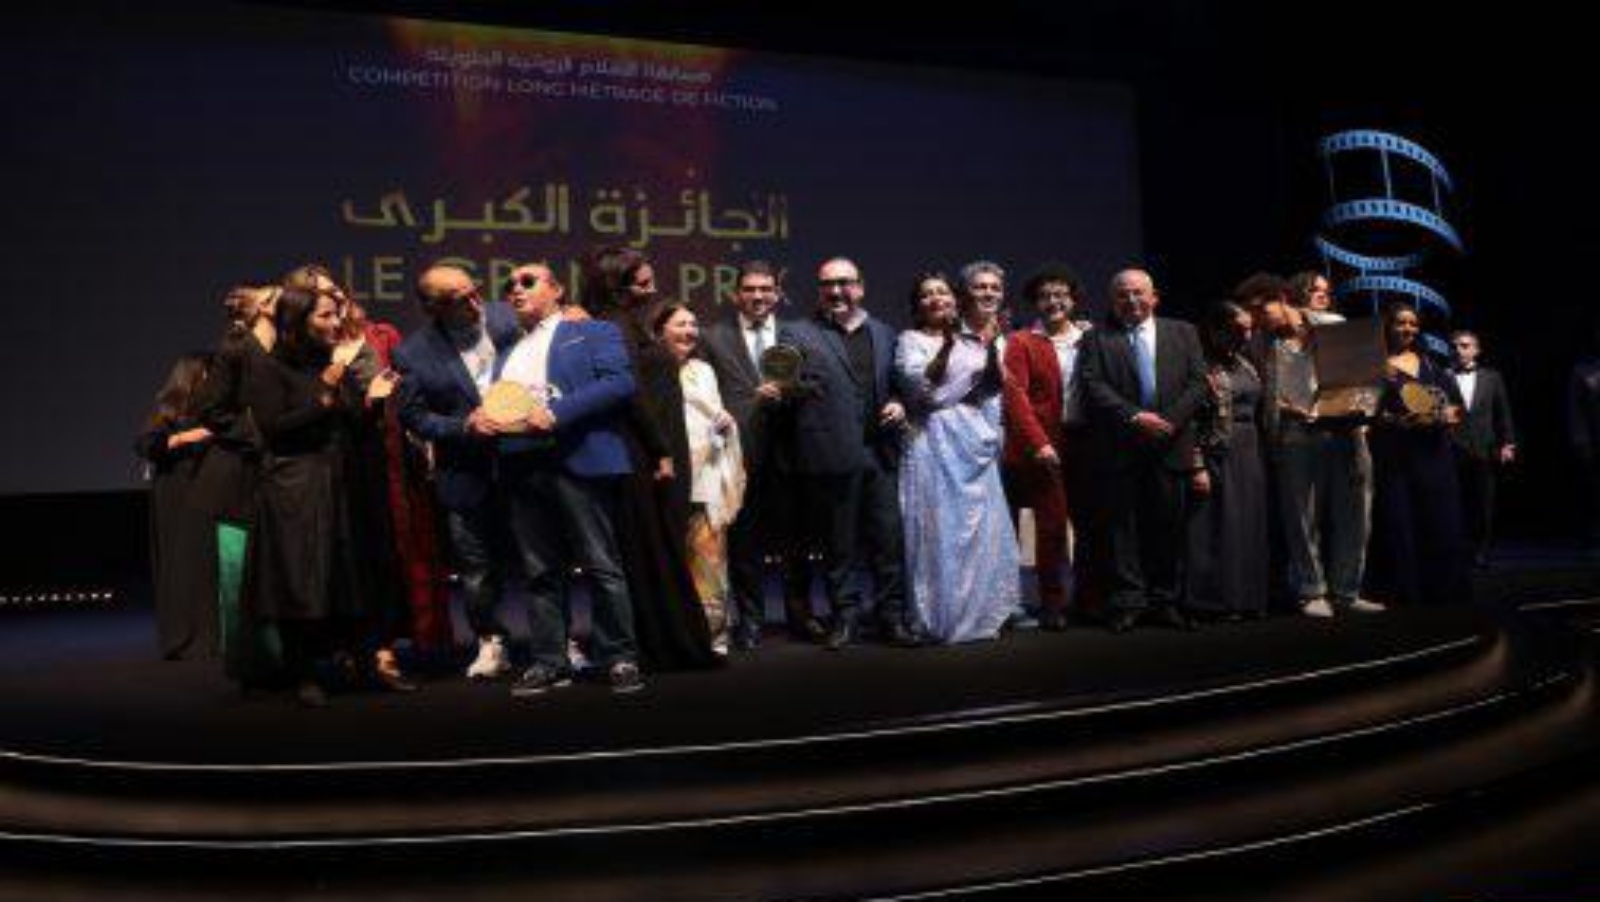 صورة تذكارية للفائزين بالجوائز بمهرجان الفيلم الوطني في طنجة مع محمد المهدي بنسعيد وزير الشباب والثقافة والتواصل (ماب)